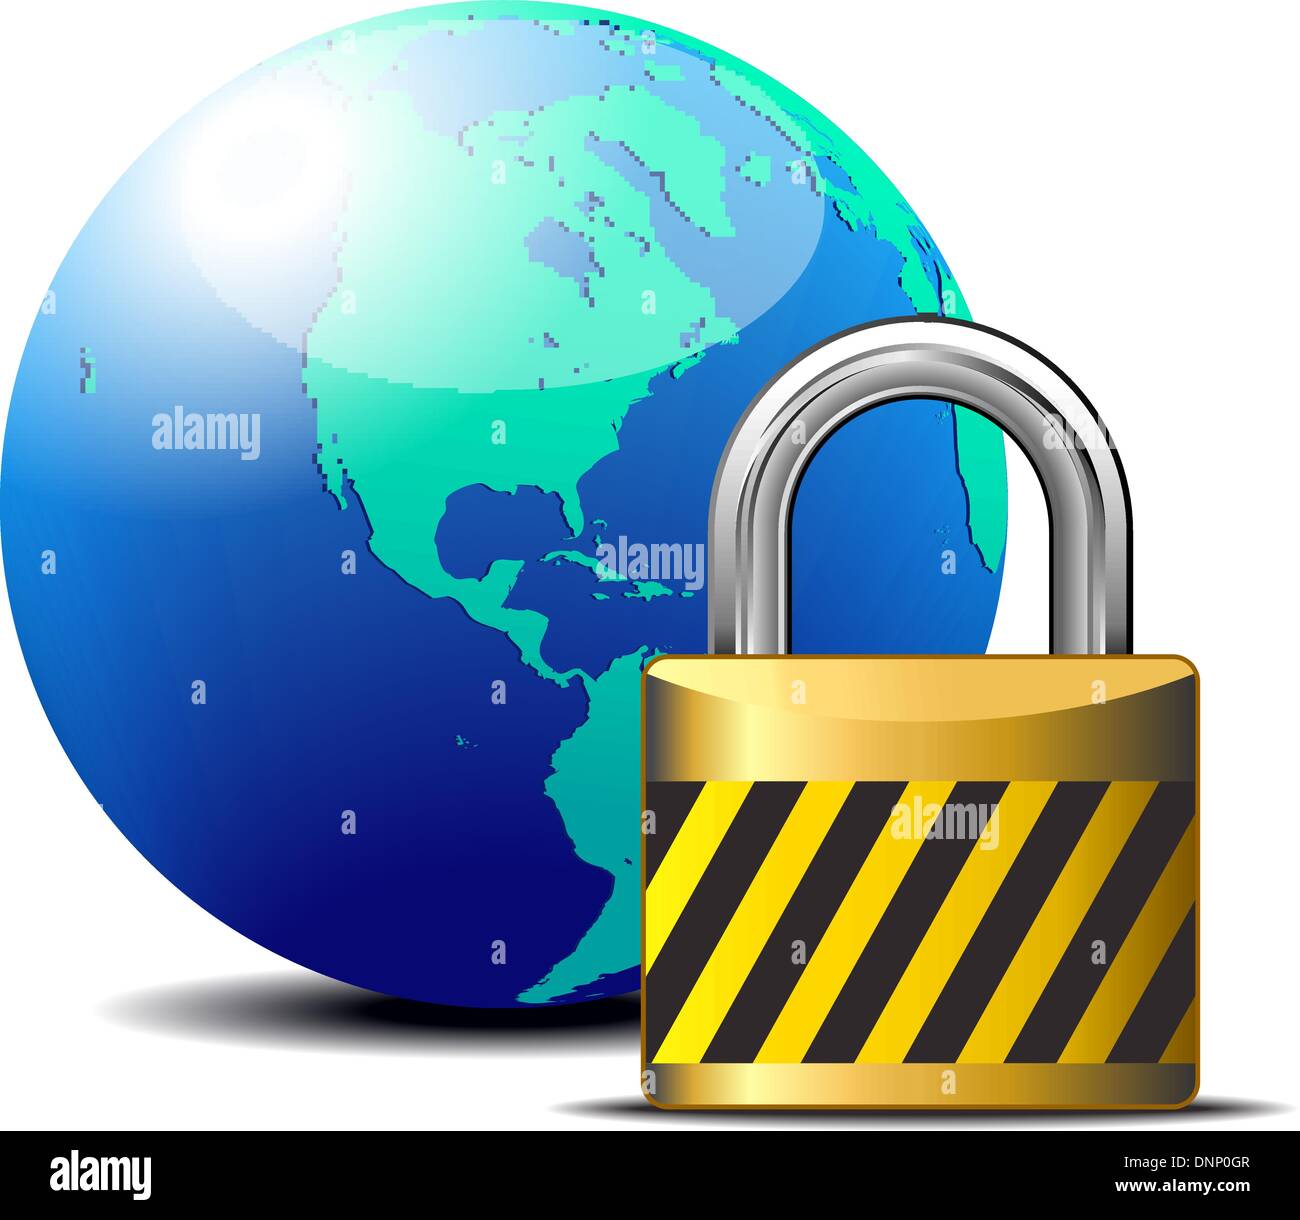 Connessione internet sicura con il mondo globale - Firewall, lo sblocco degli account, cassaforte, serratura Illustrazione Vettoriale